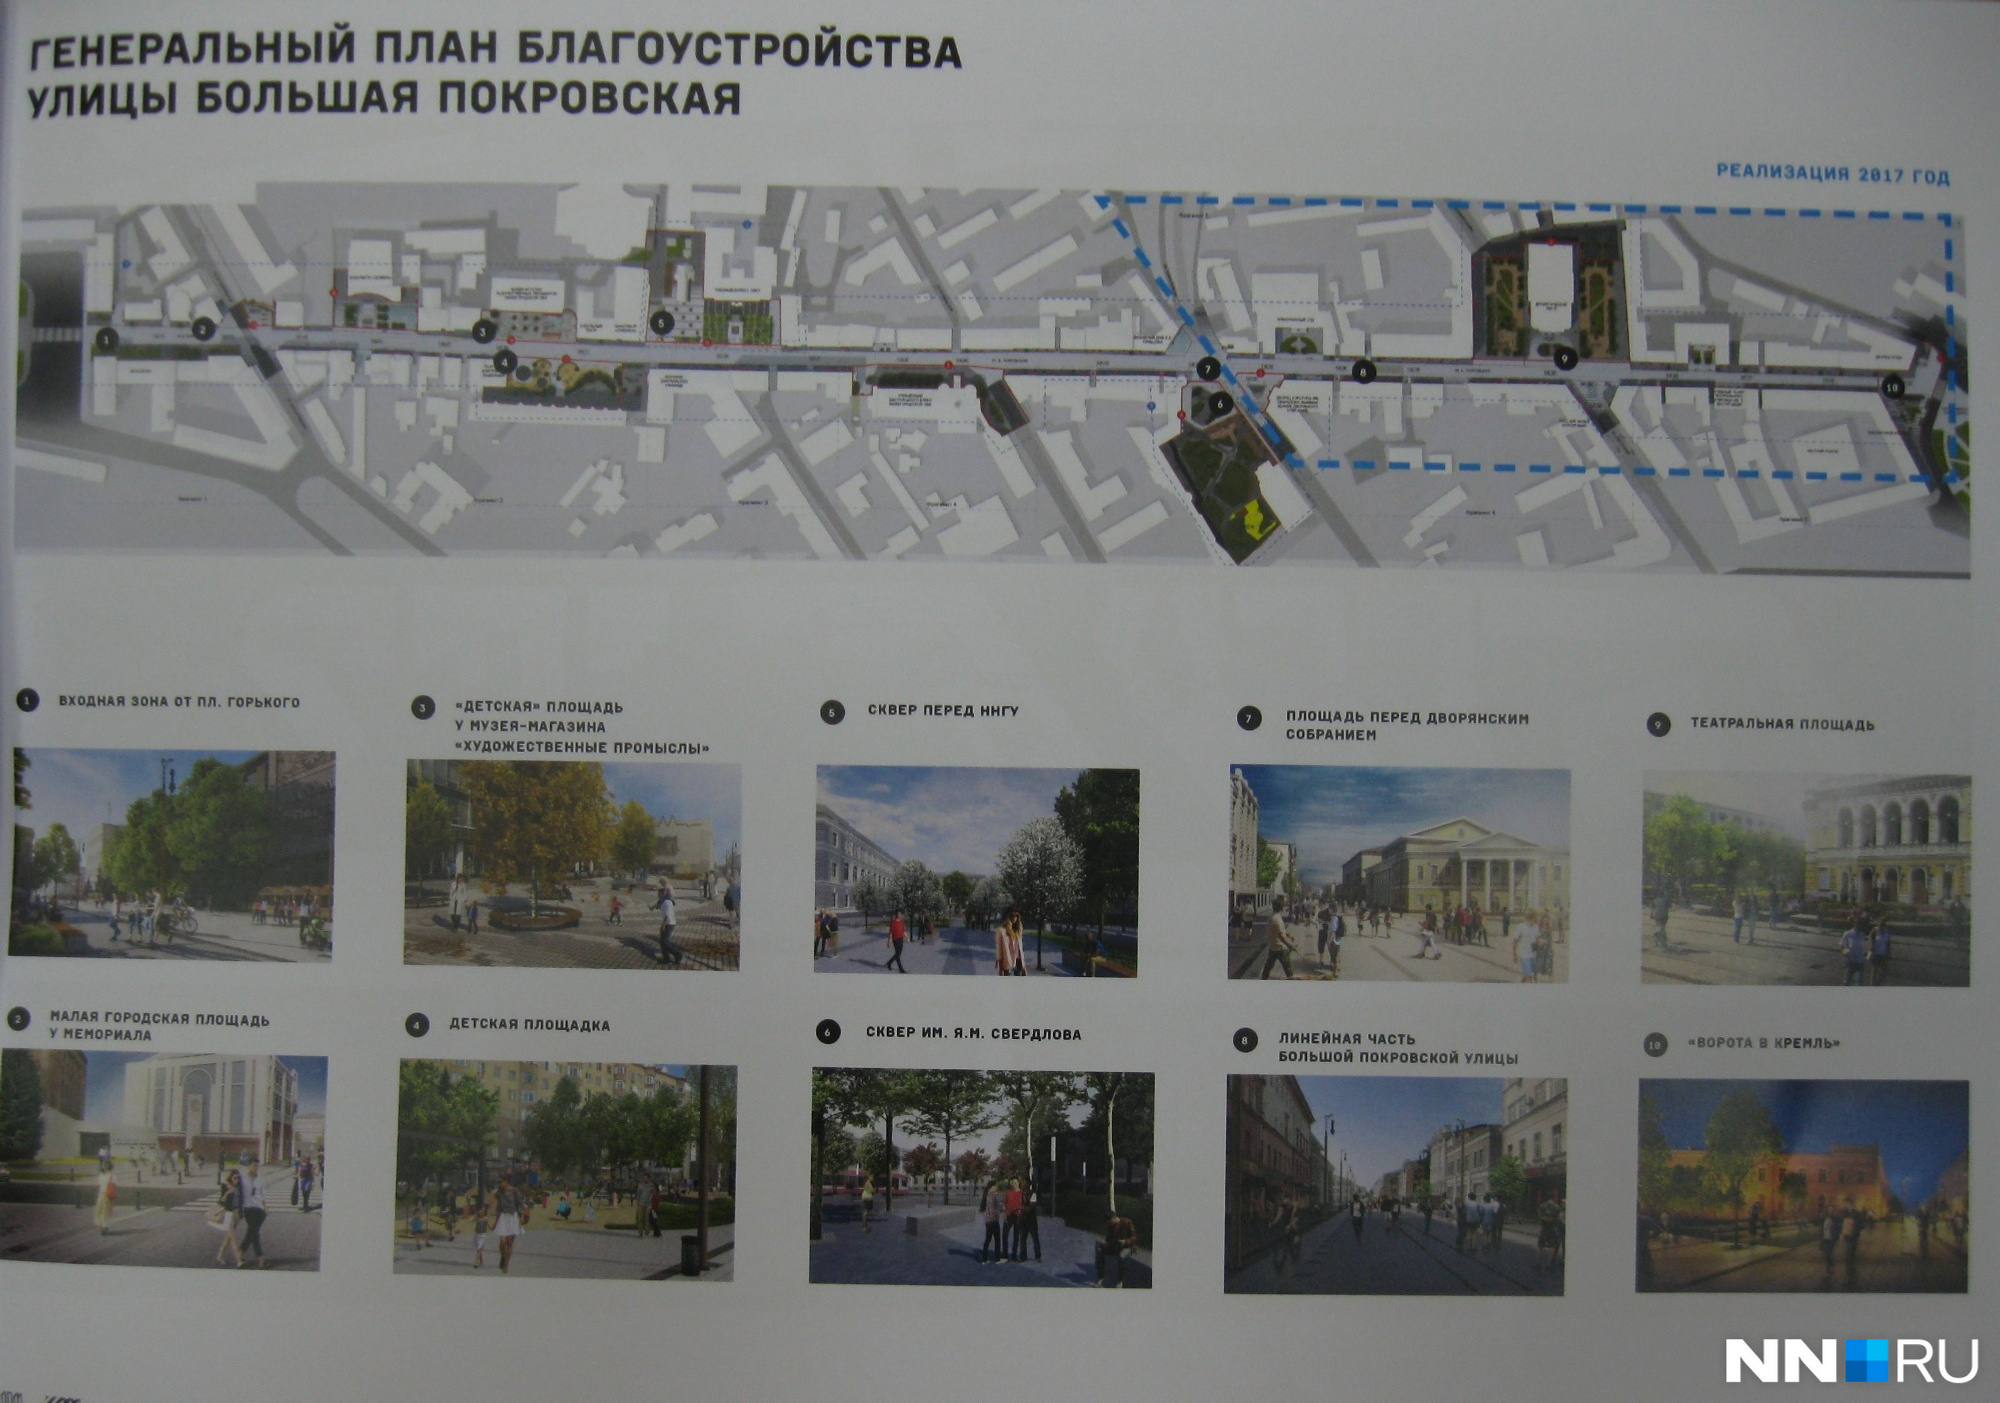 Благоустройство территории на улице Большой Покровской будет разделено на 10 зон